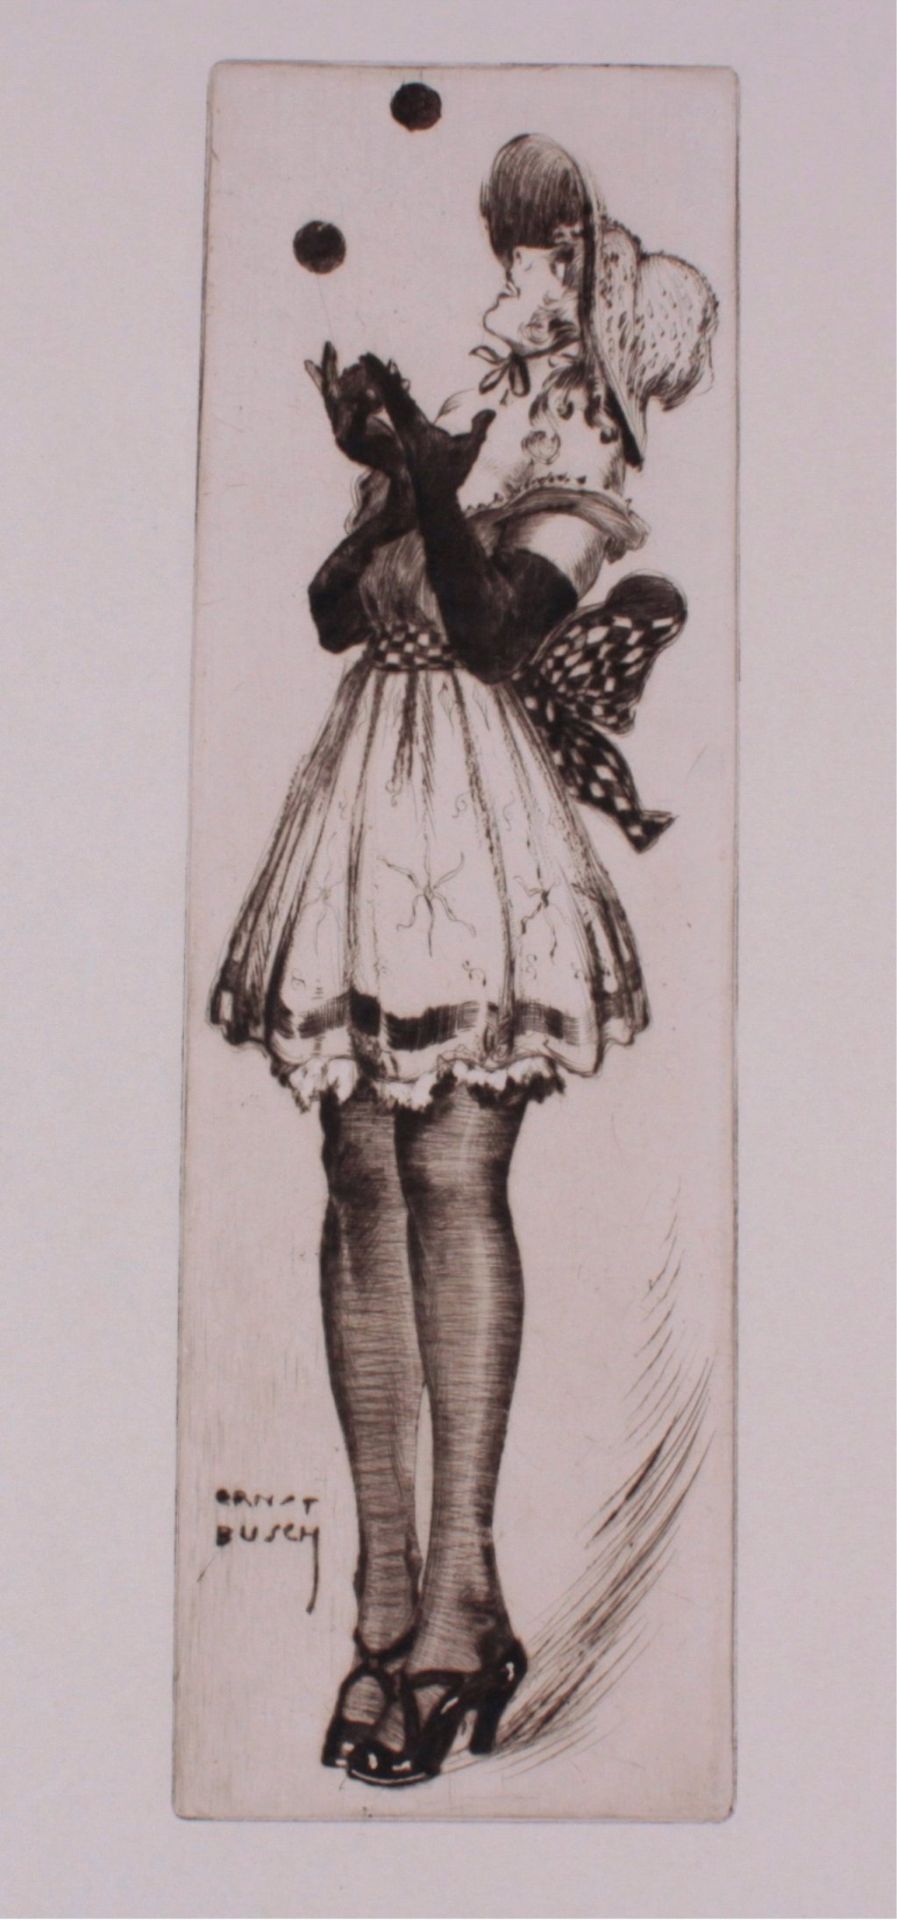 Ernst Busch 1920Junge Dame balancierend, in der Platte signiert, ca. 49,5 x34,5 cm